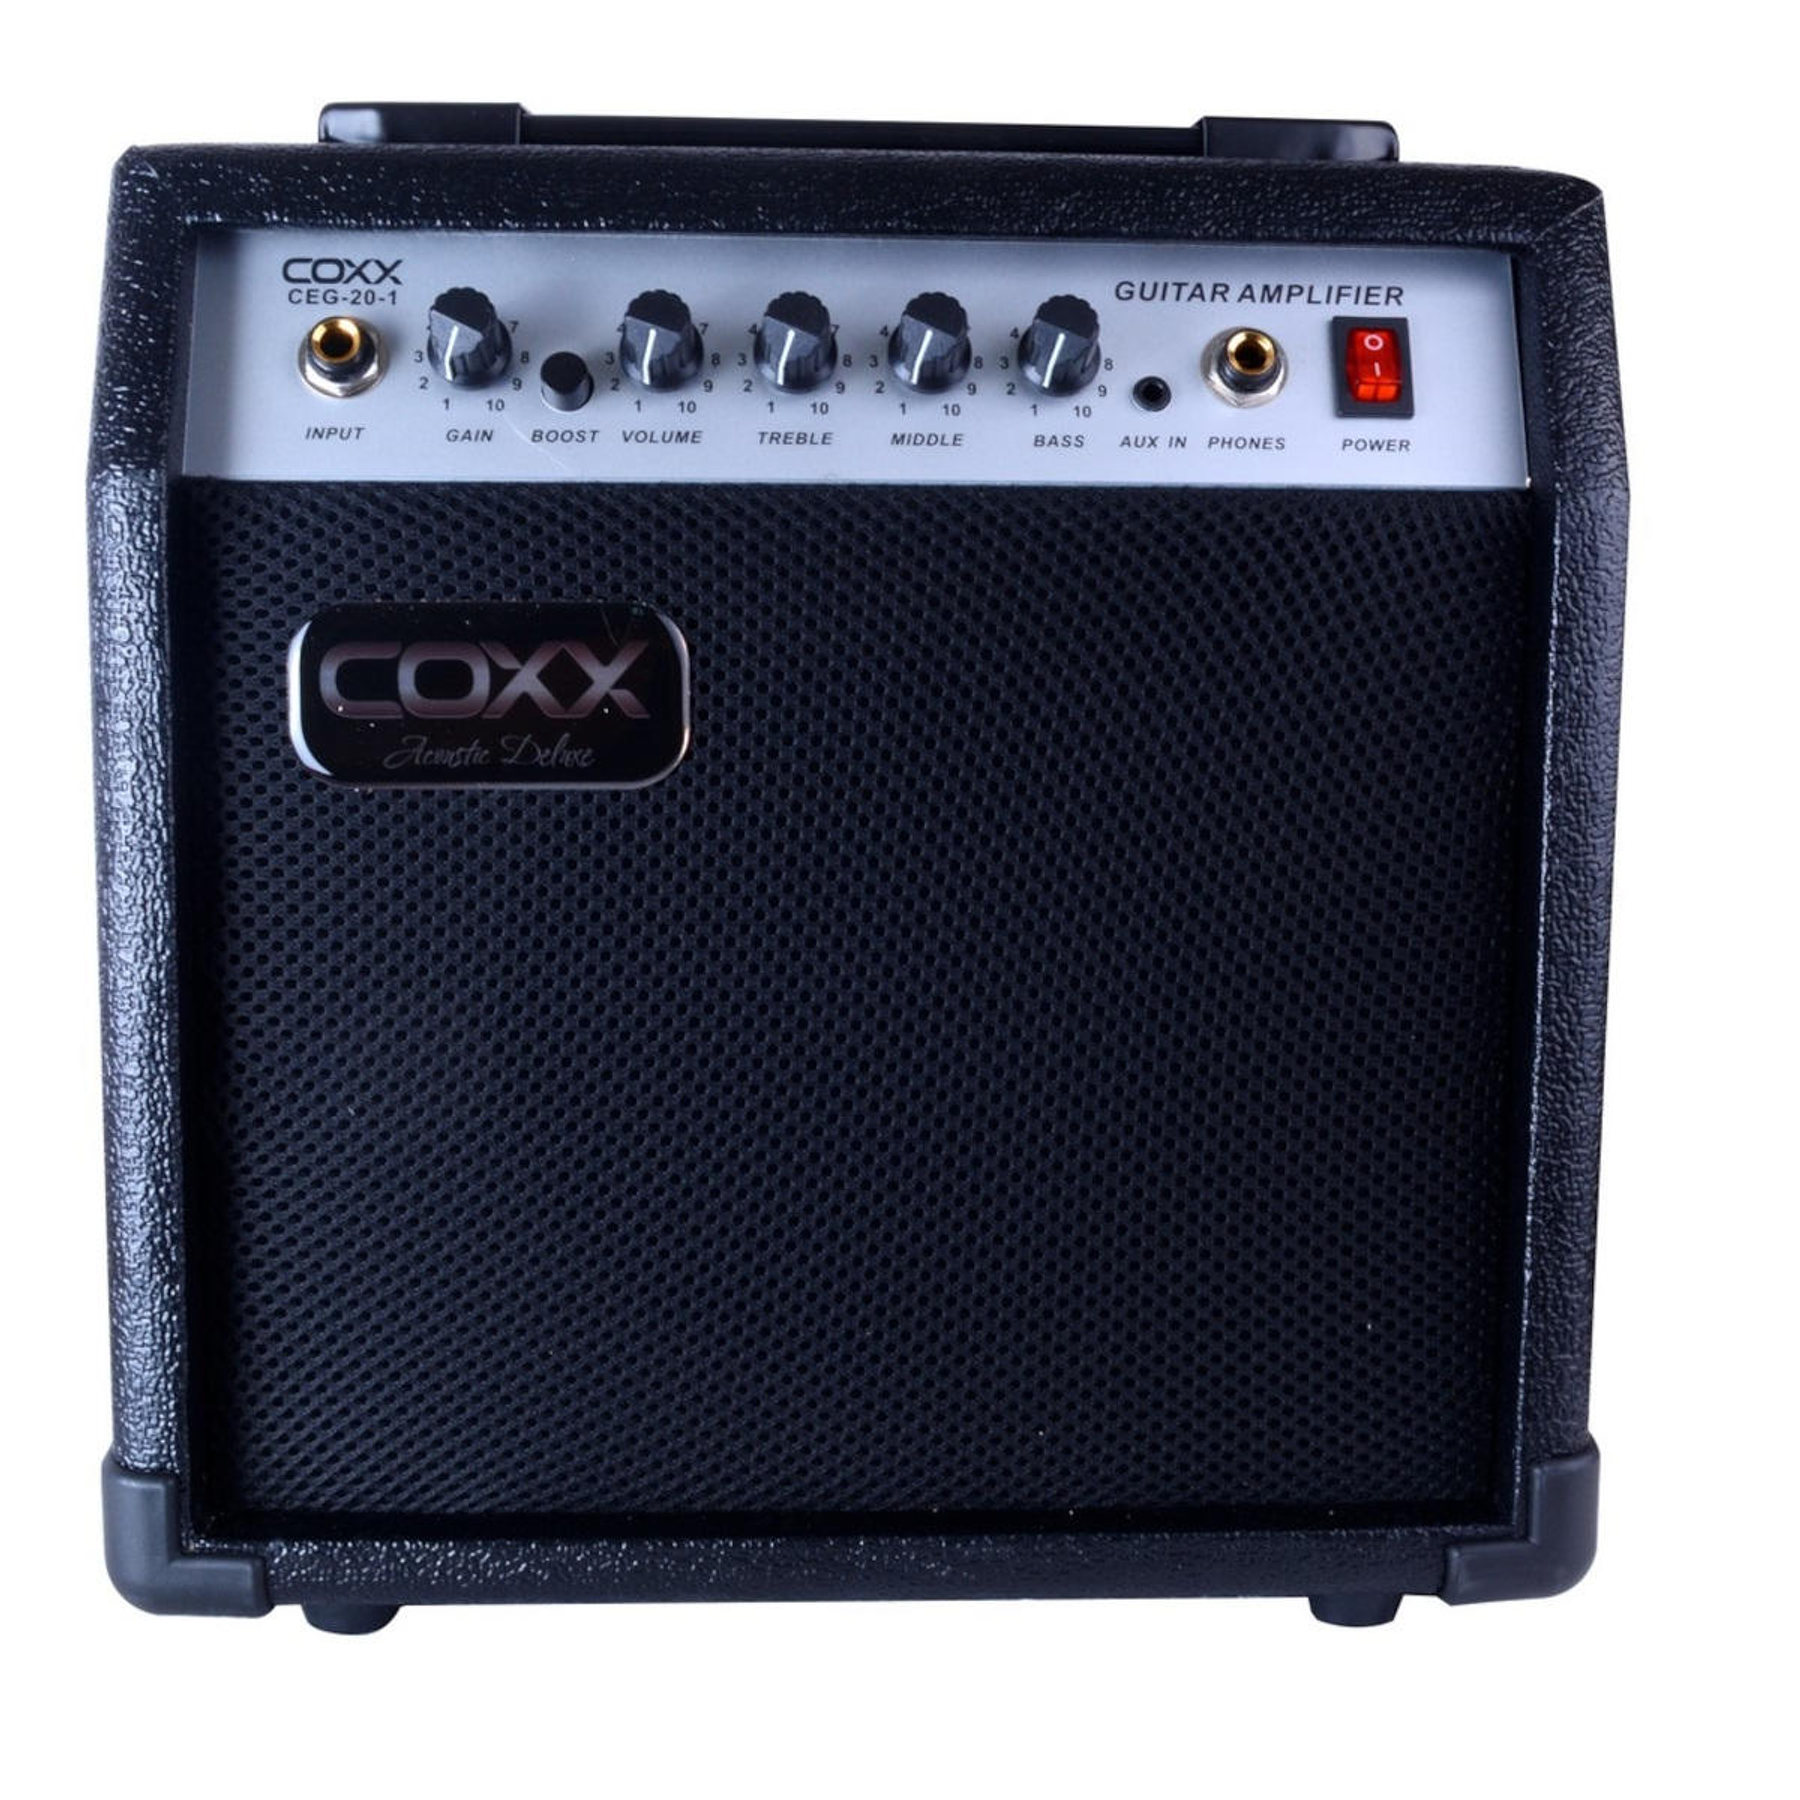 Amplificador de Guitarra COXX CEG-20-1